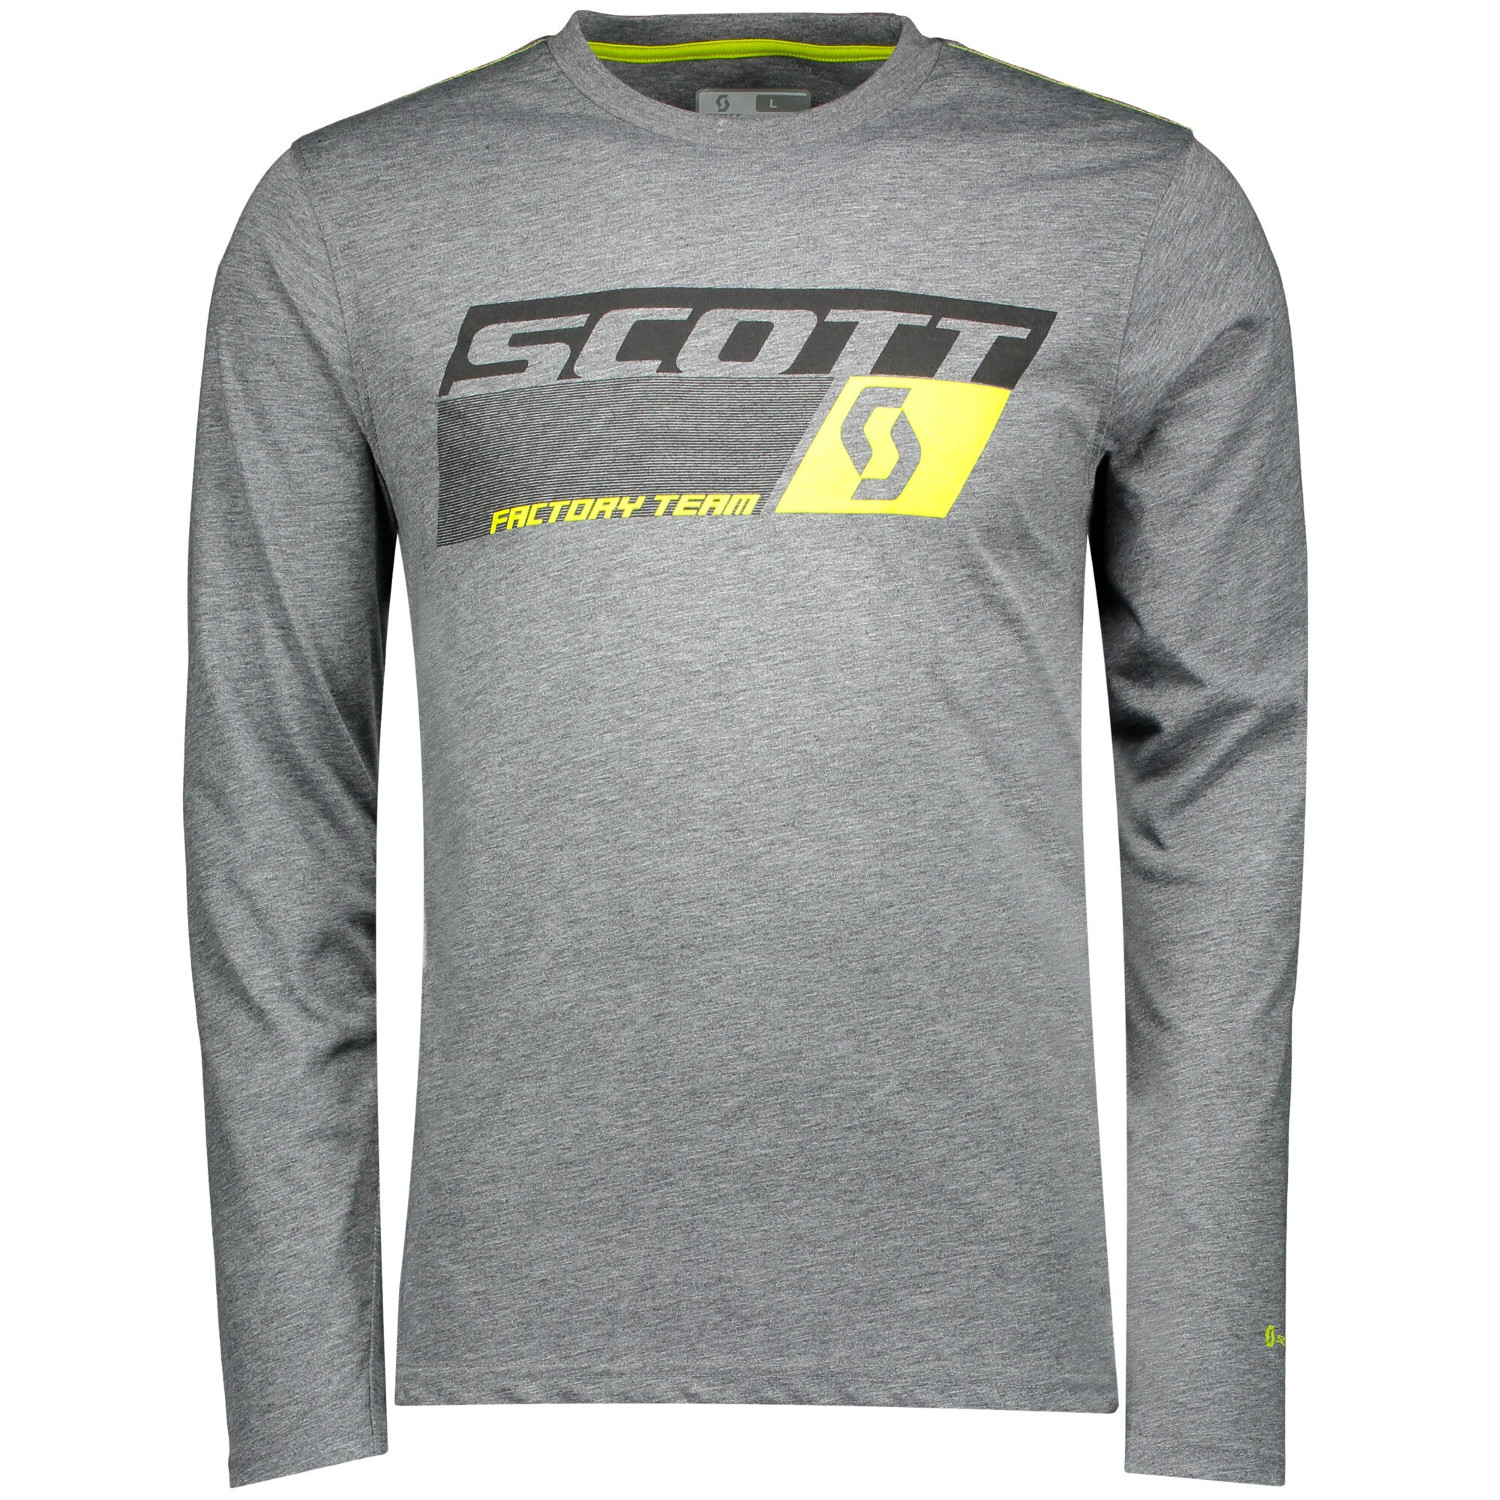 Scott T-Shirt Manica Lunga Factory Team Dri Grigio Scuro Melange/Sulphur Giallo